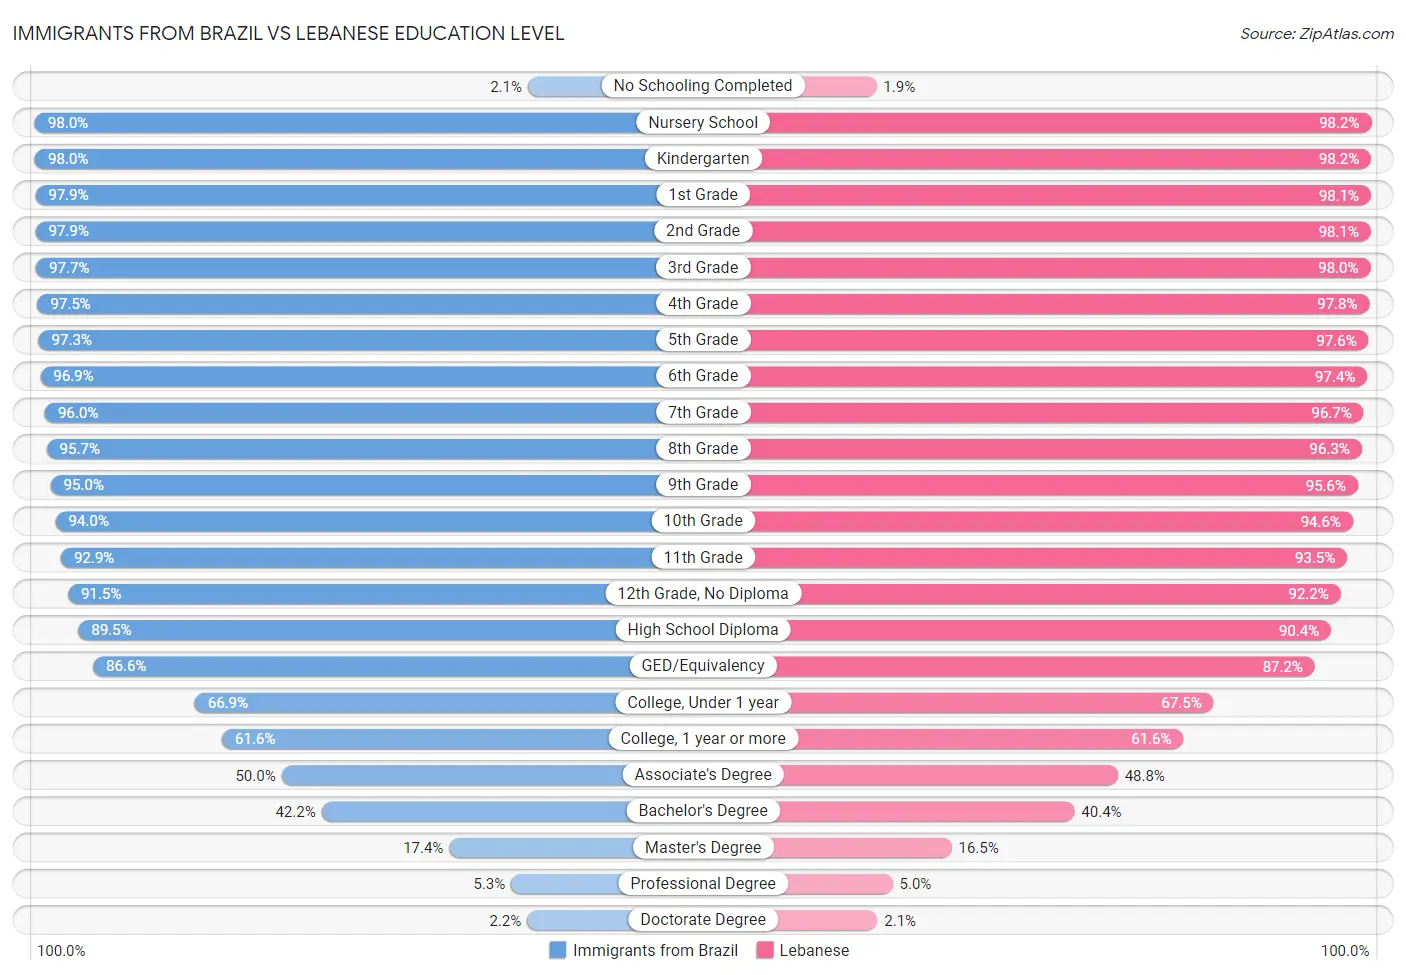 Immigrants from Brazil vs Lebanese Education Level